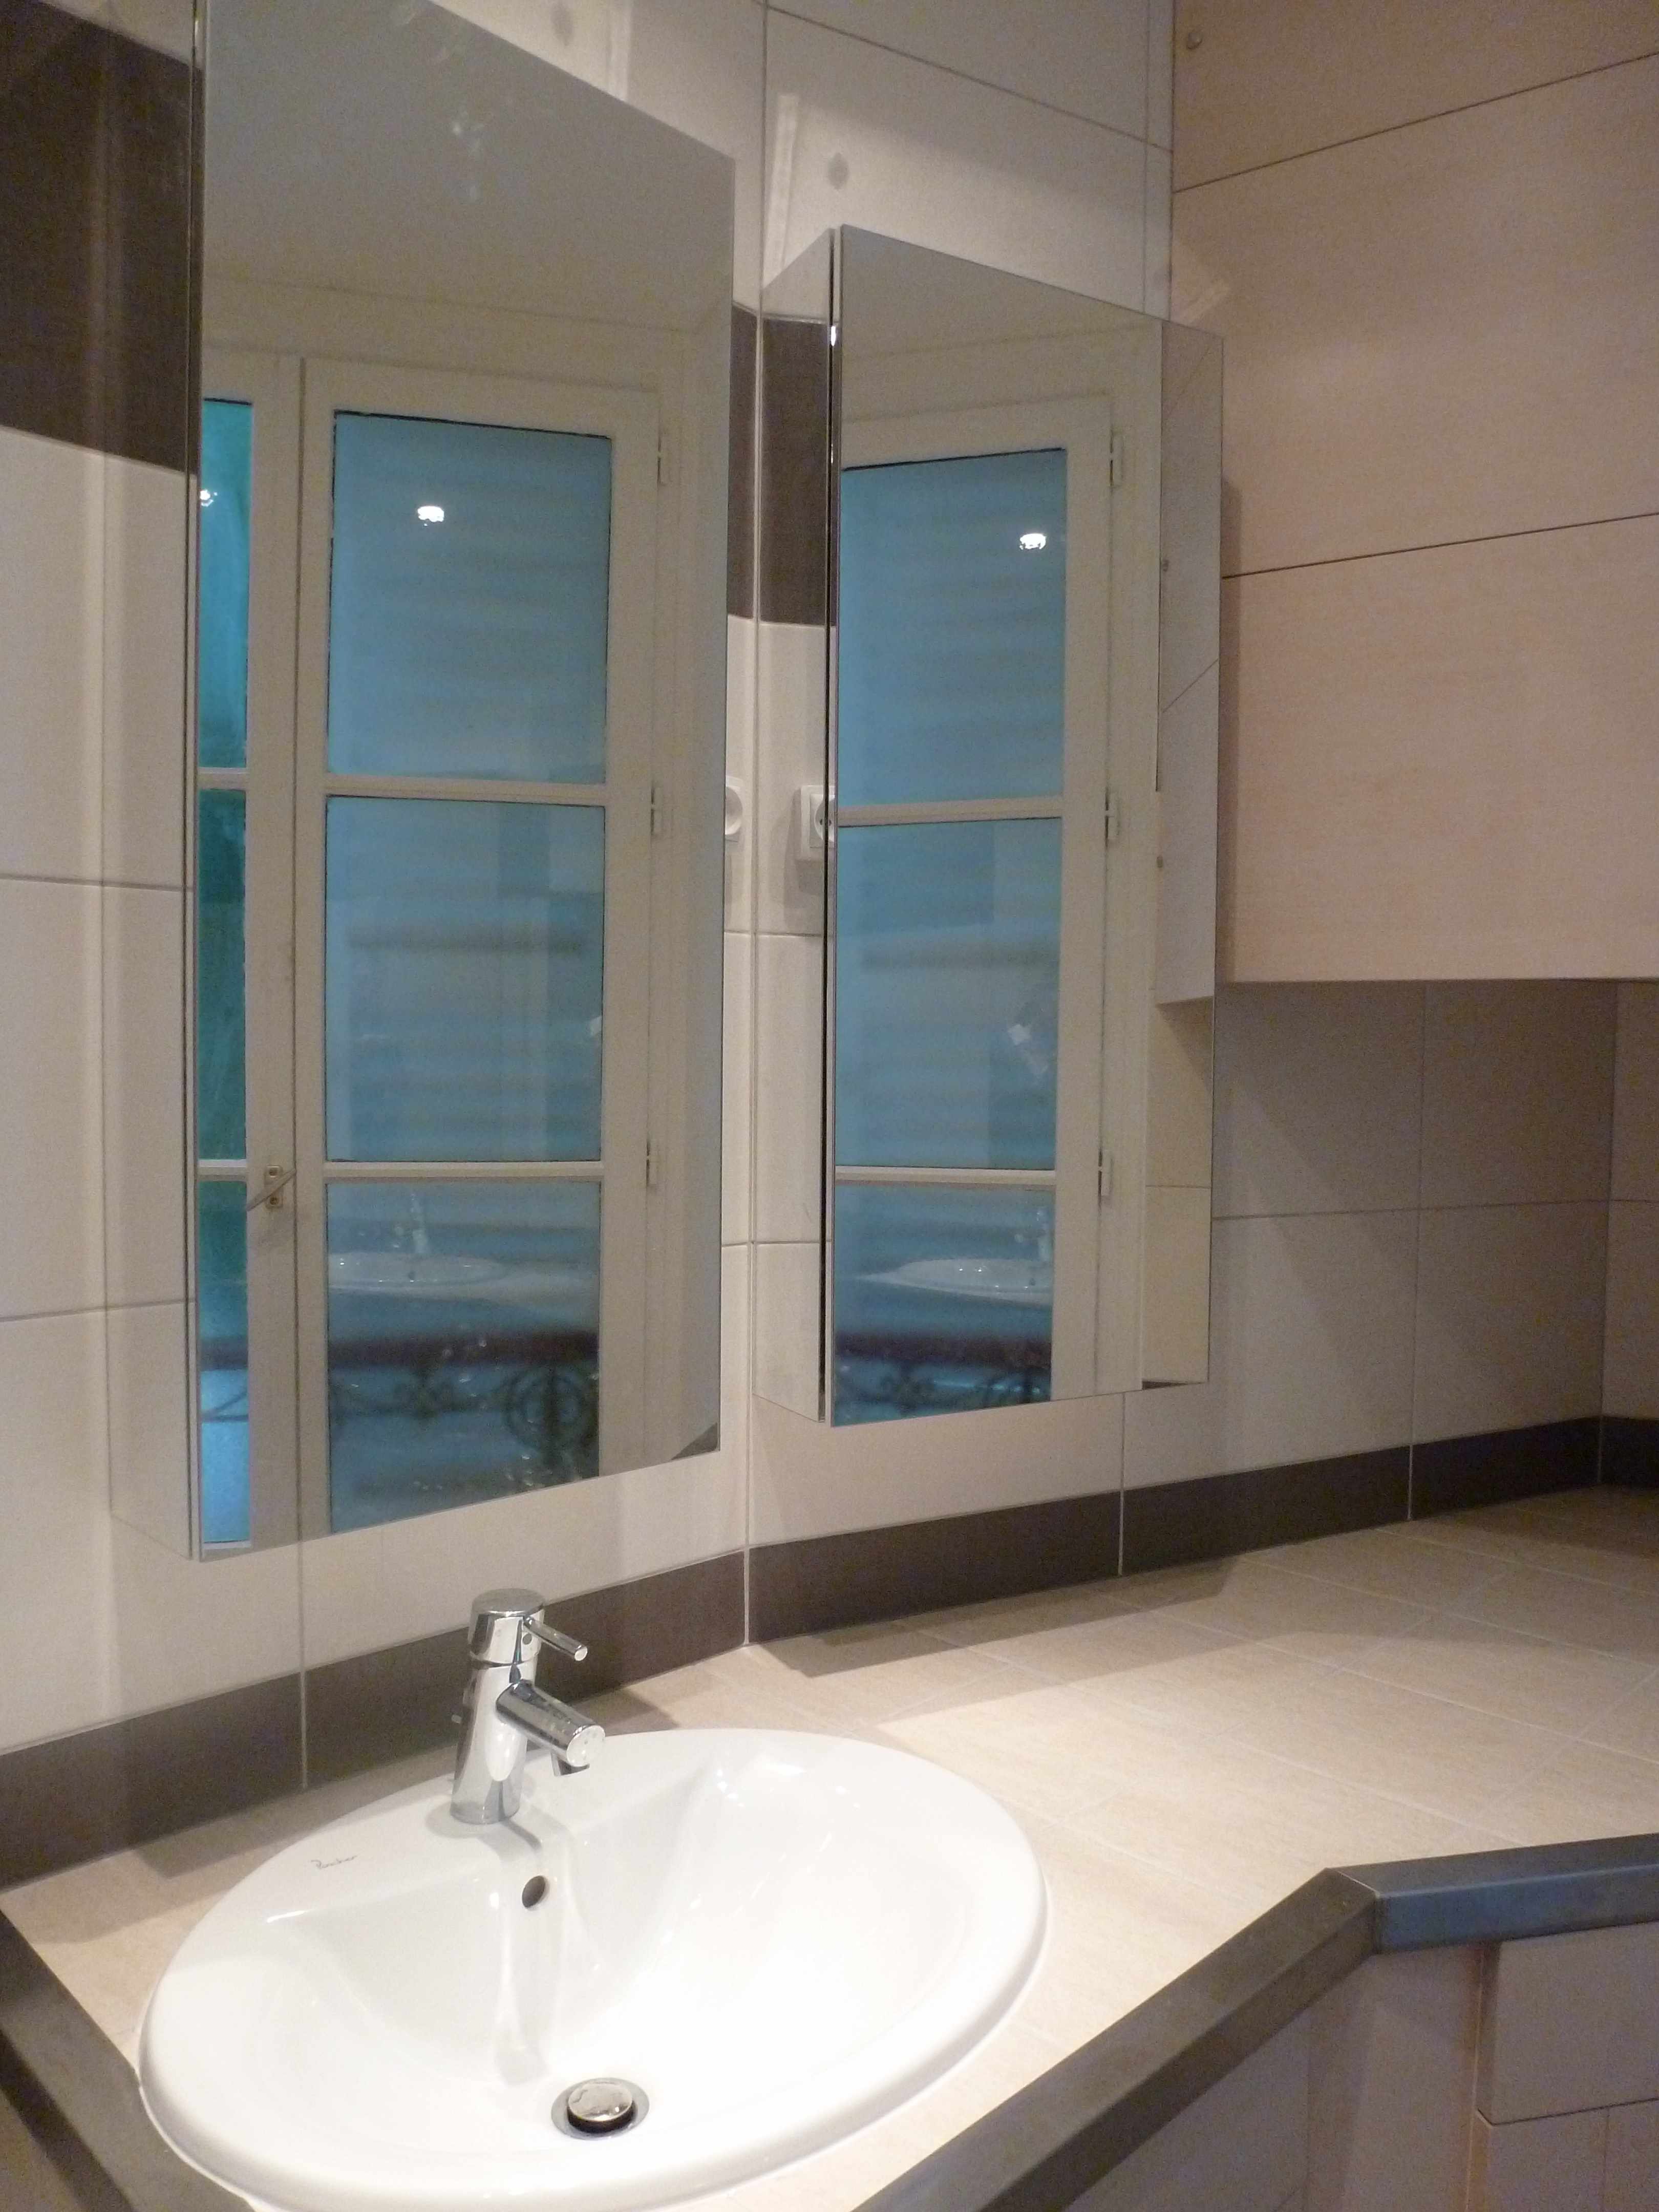 Salle de bain Paris A tous les etages 2013